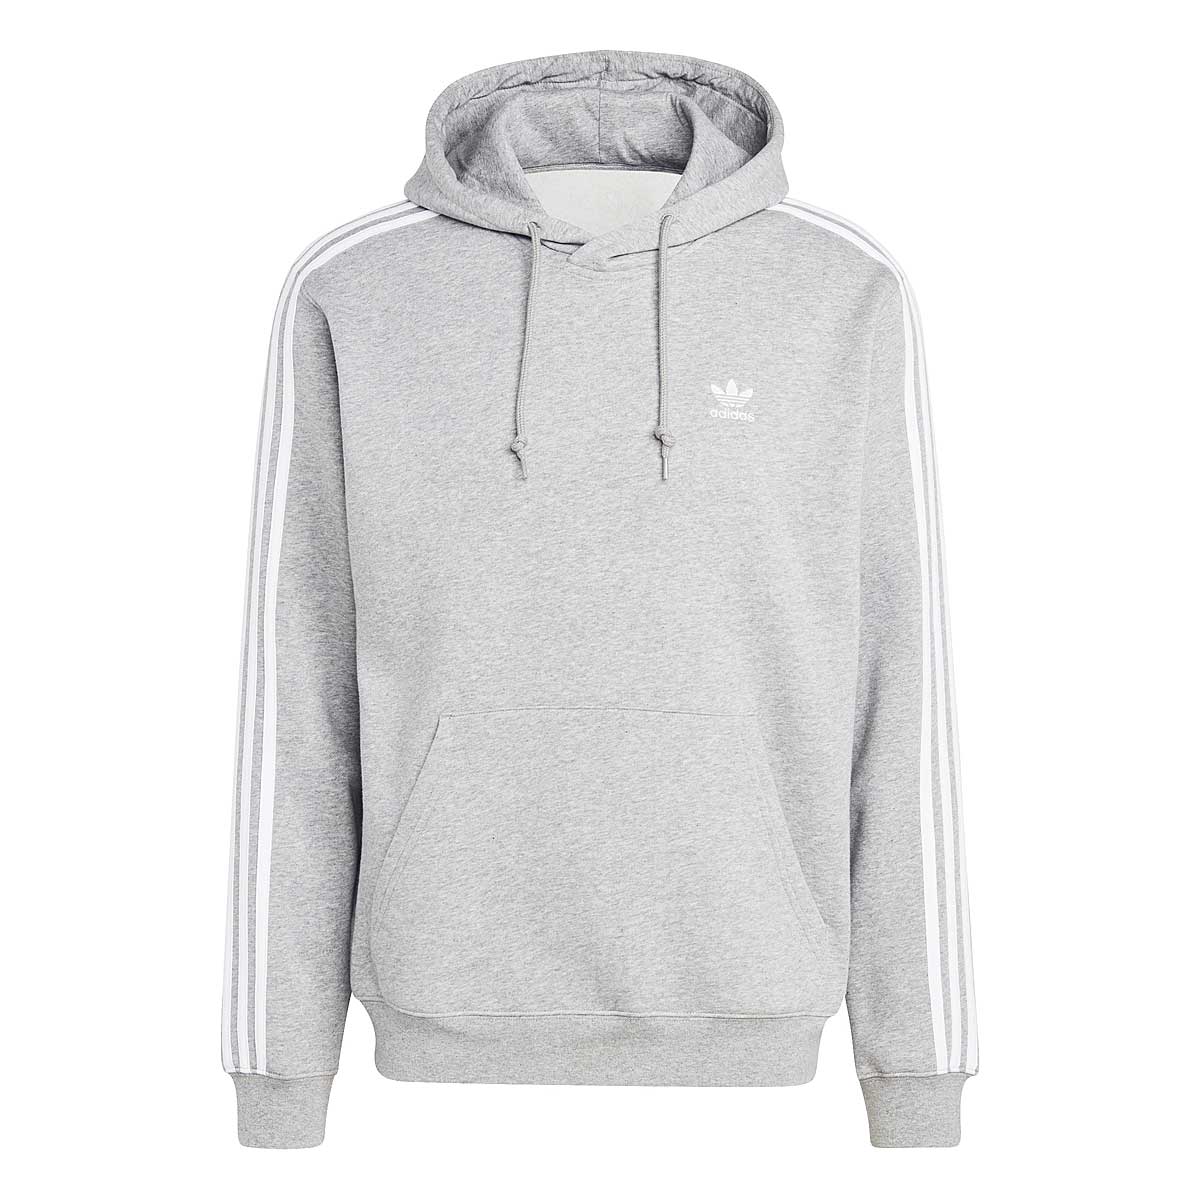 Adidas 3-stripes Hoody, Grey S